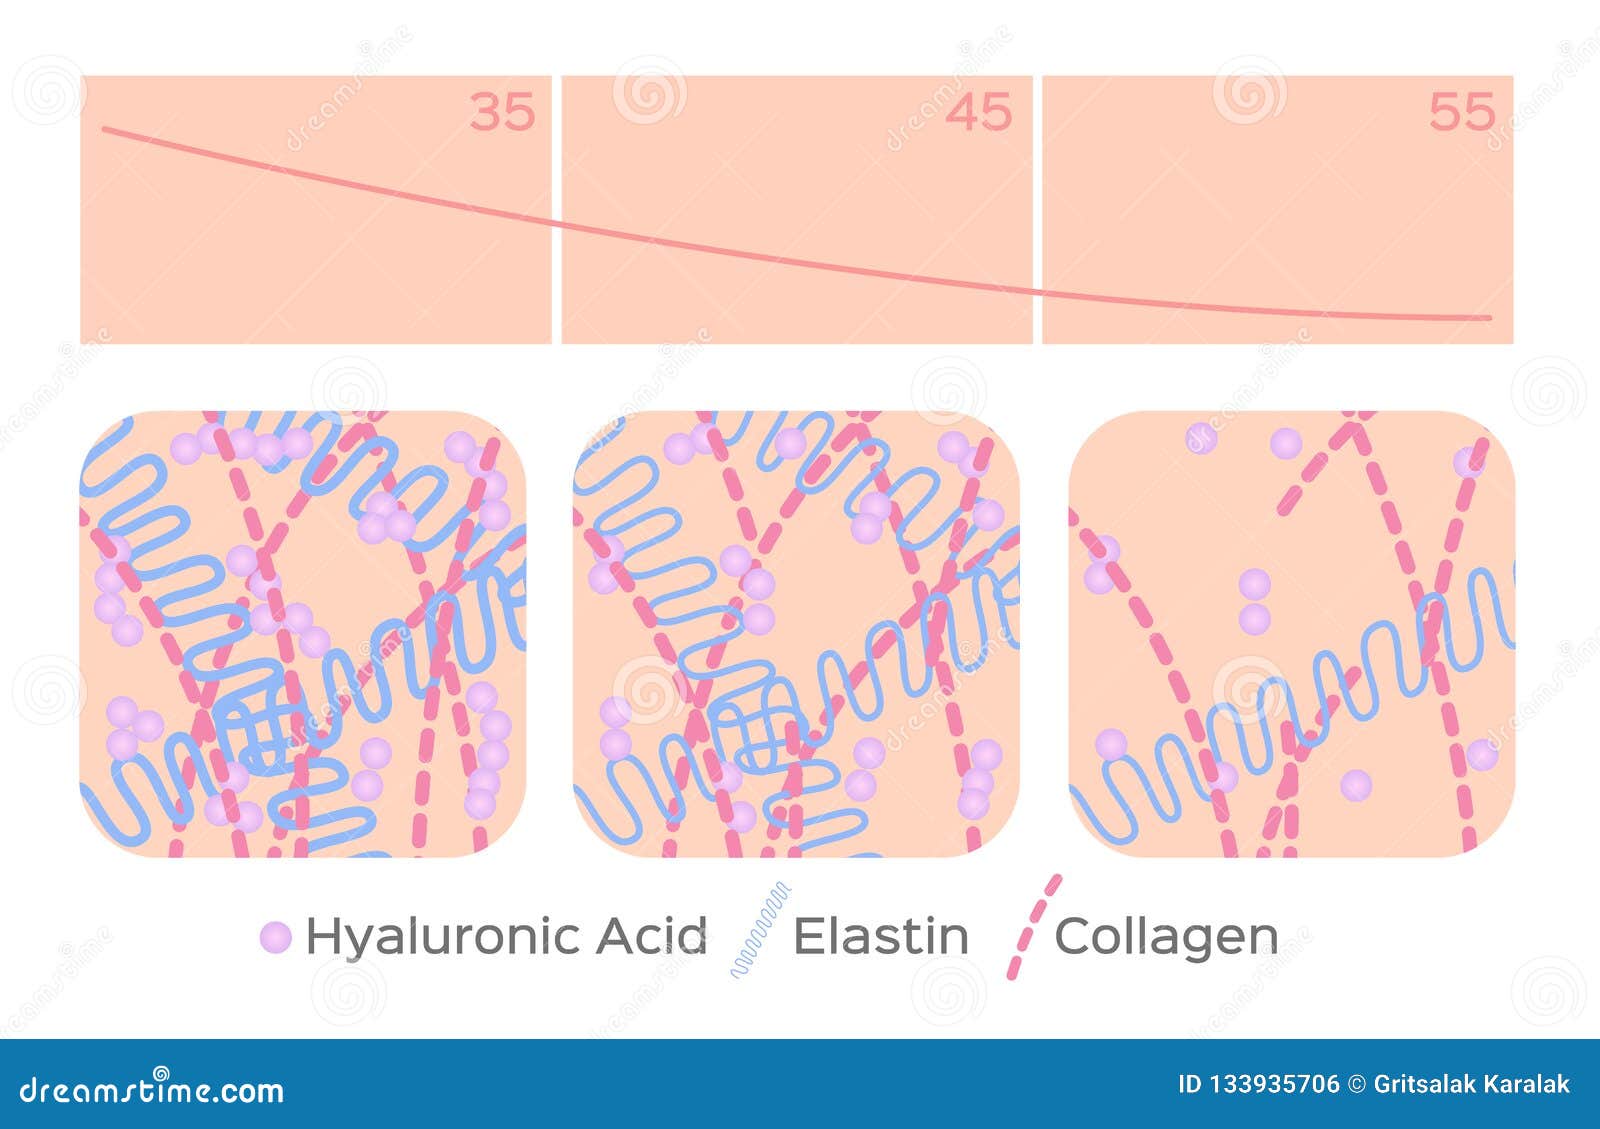 aging skin level / hyaluronic acid / elastin / collagen